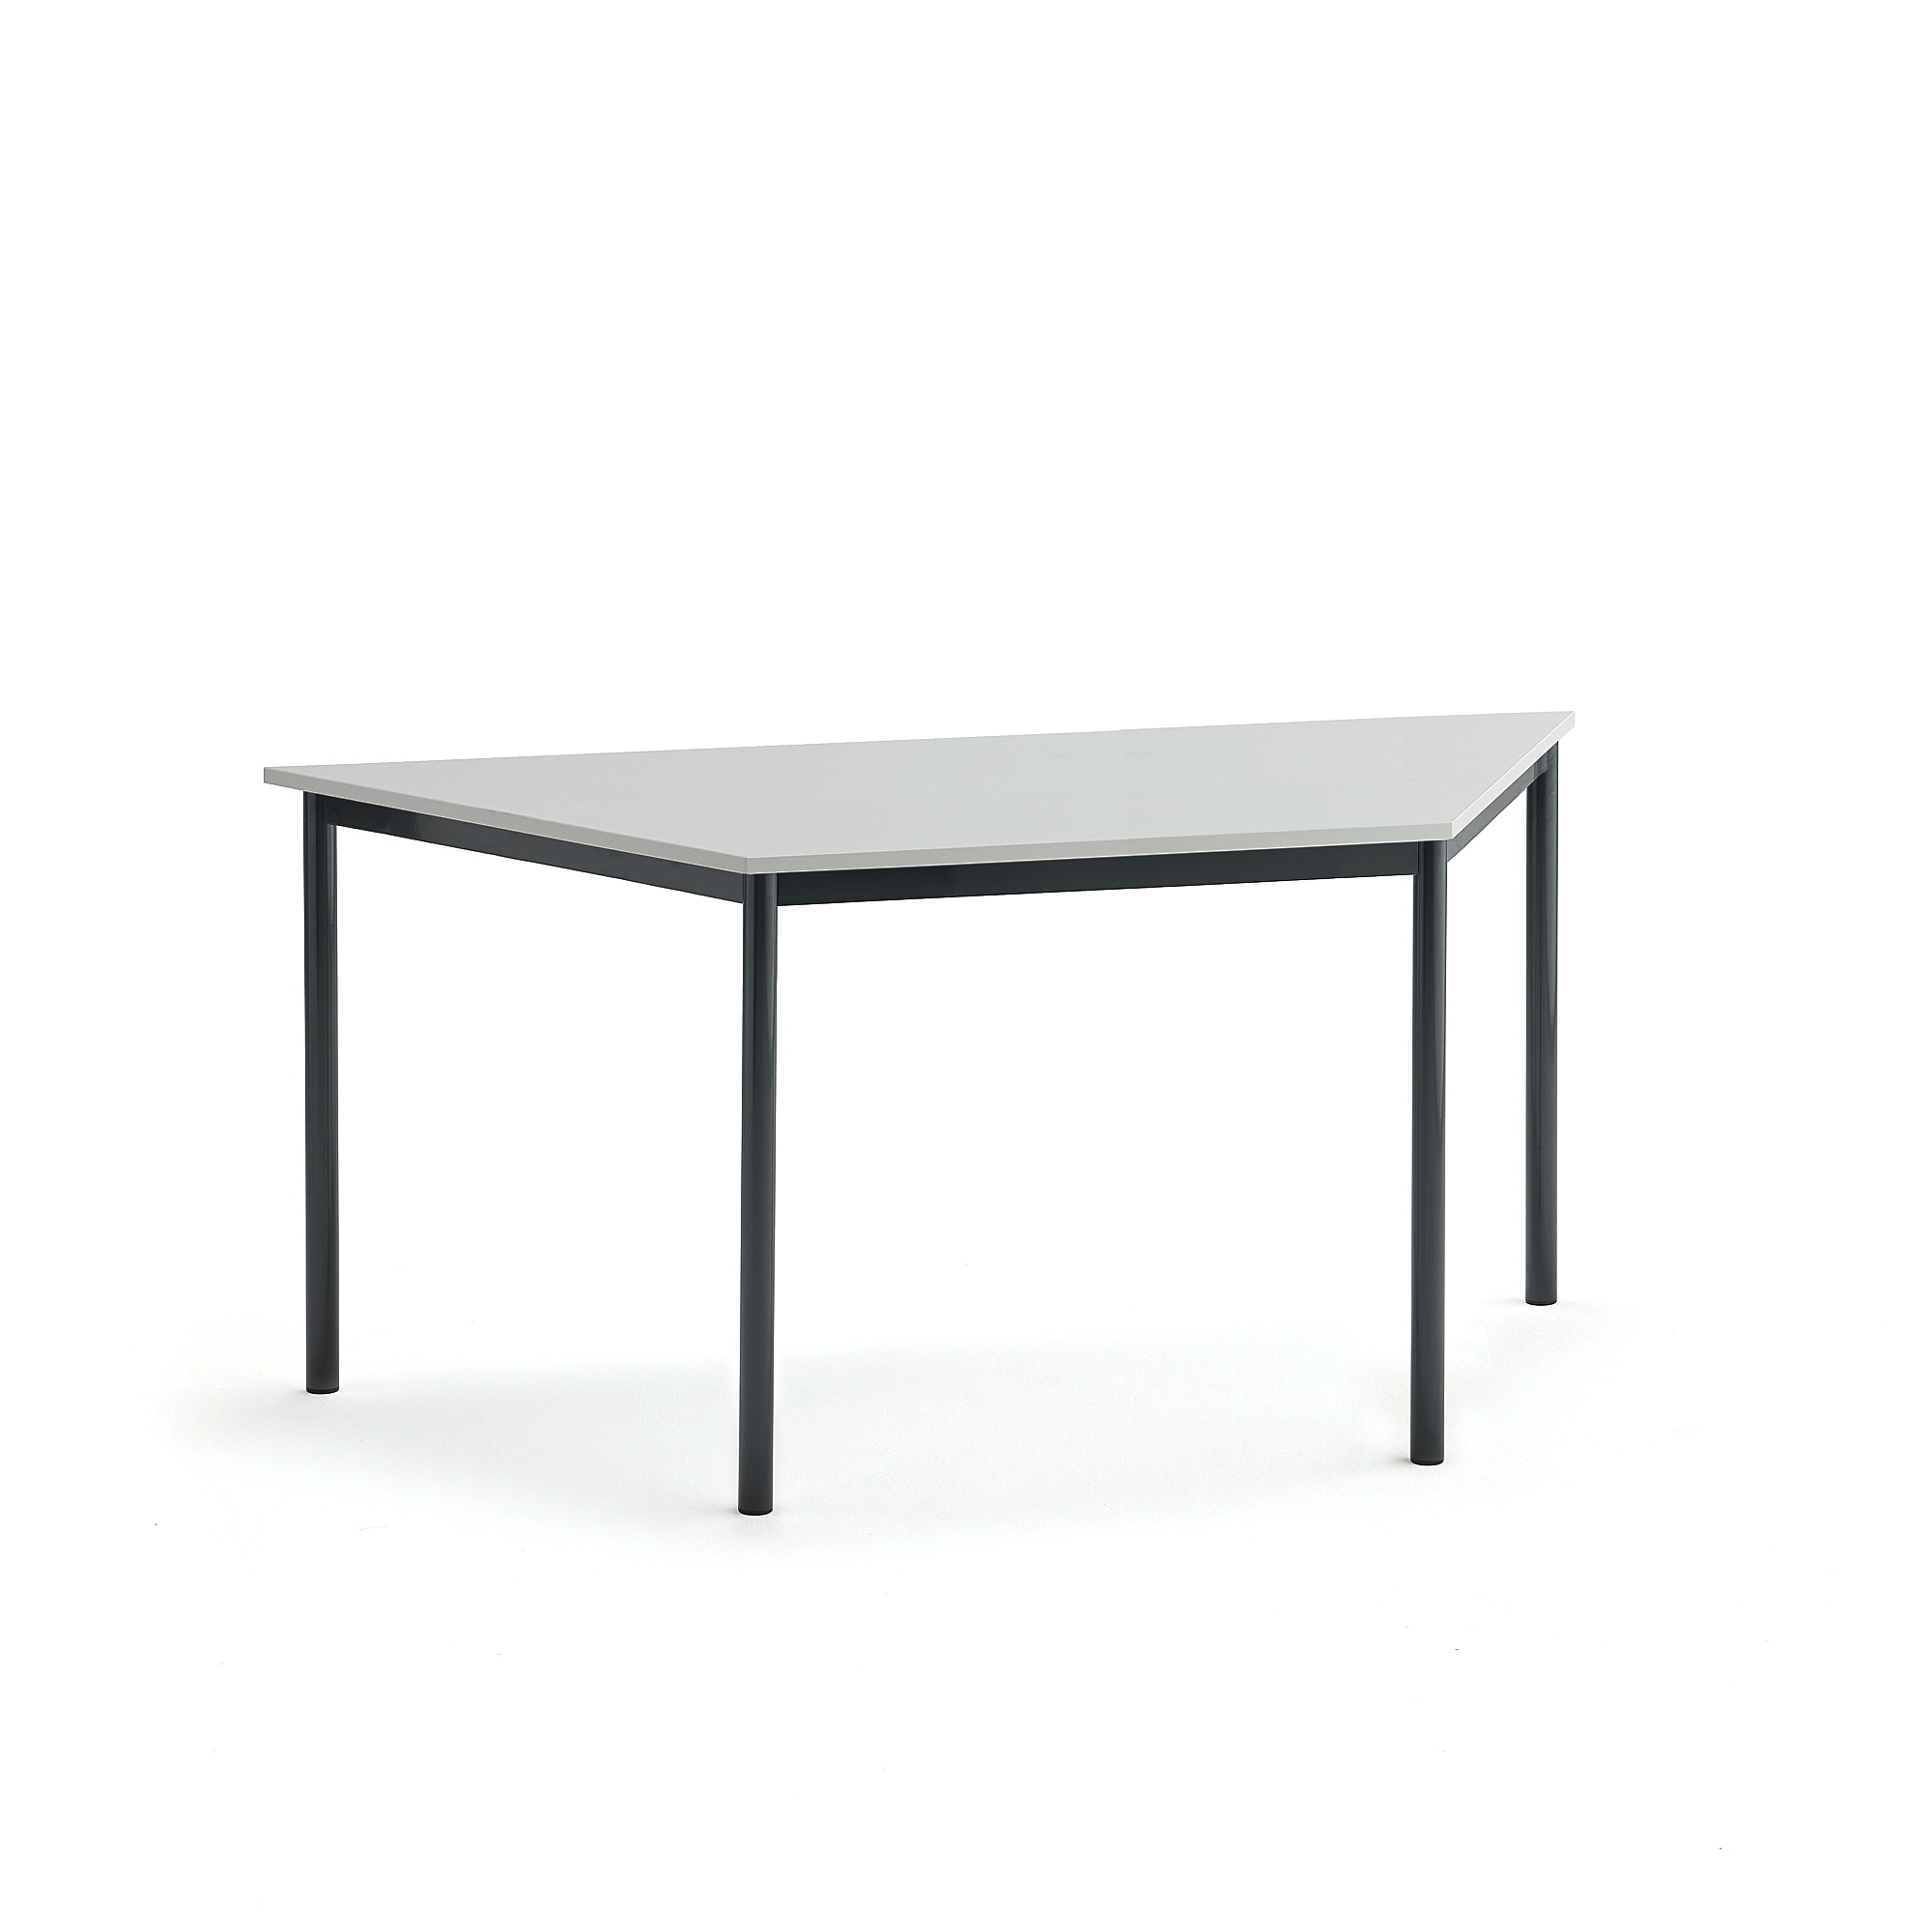 Stůl SONITUS TRAPETS, 1600x800x720 mm, antracitově šedé nohy, HPL deska tlumící hluk, šedá